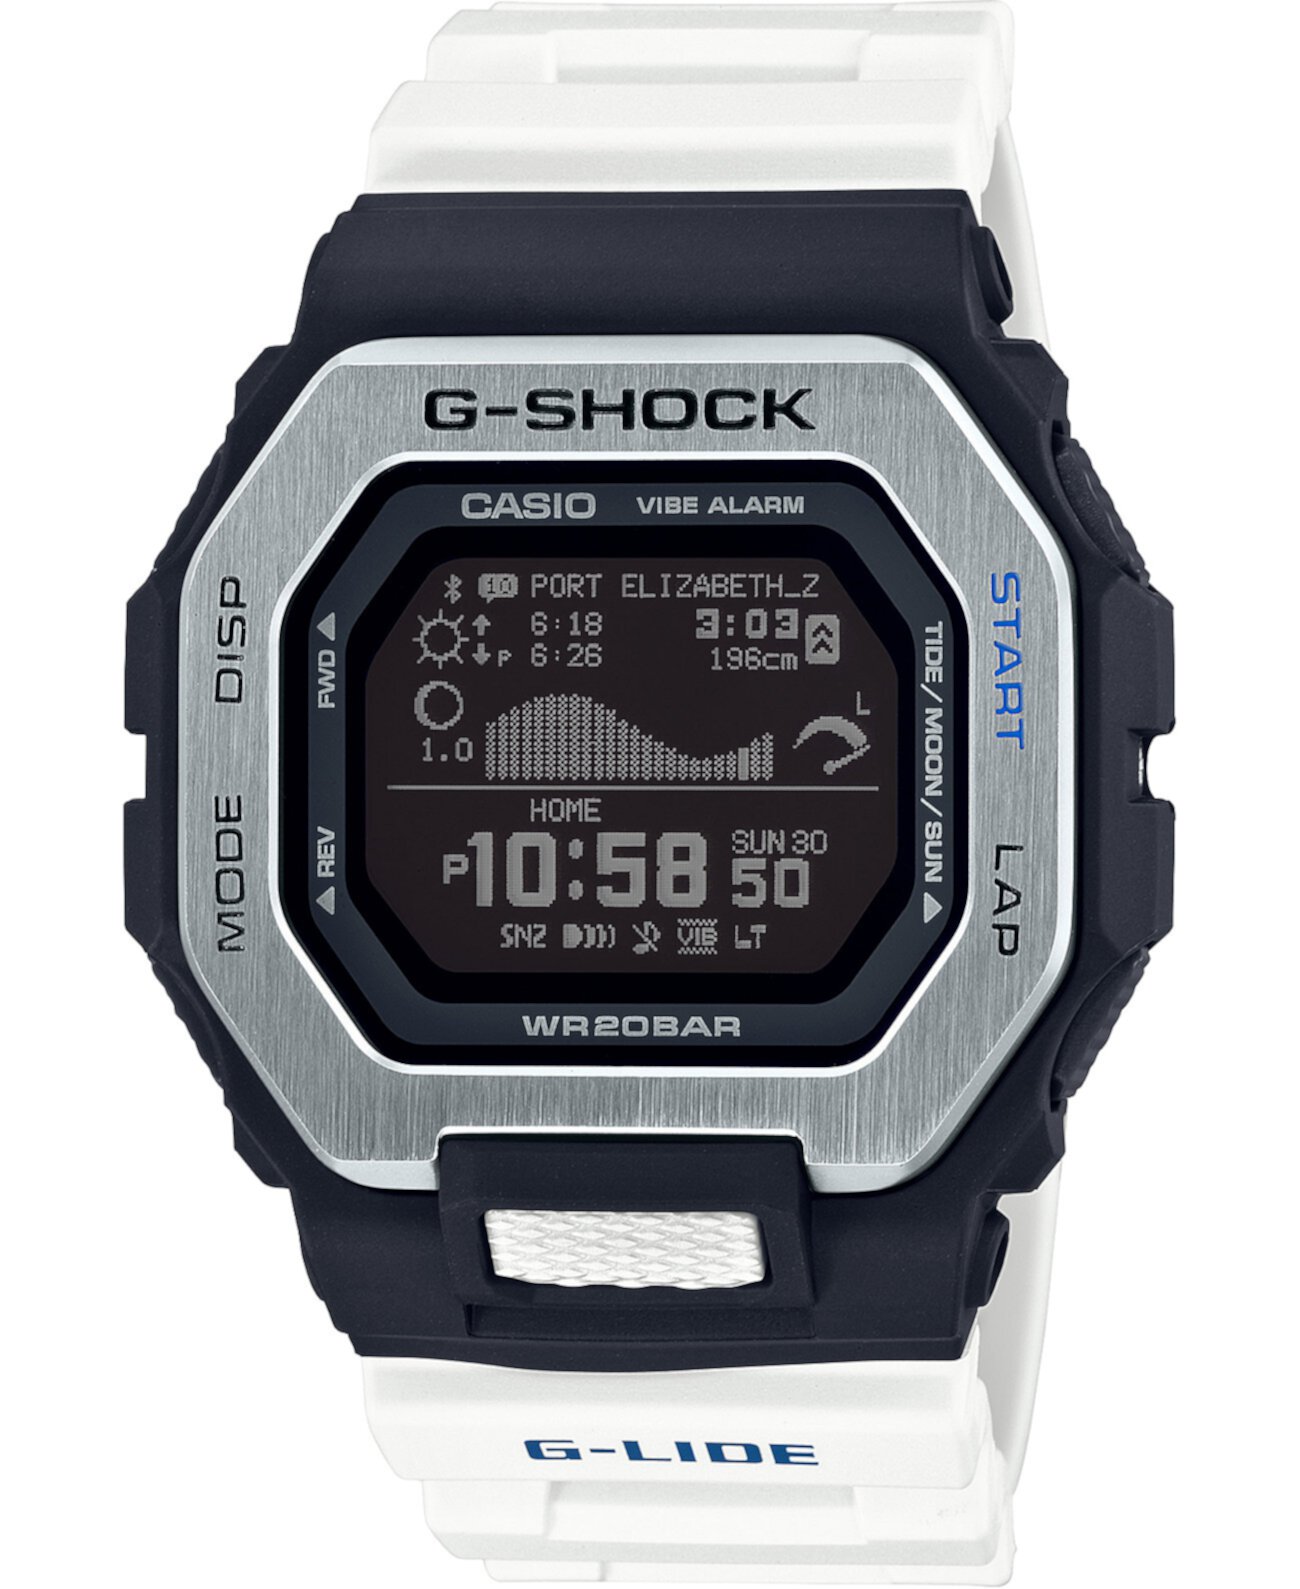 Мужские часы с цифровым ремешком G-Lide белого цвета 46 мм G-Shock